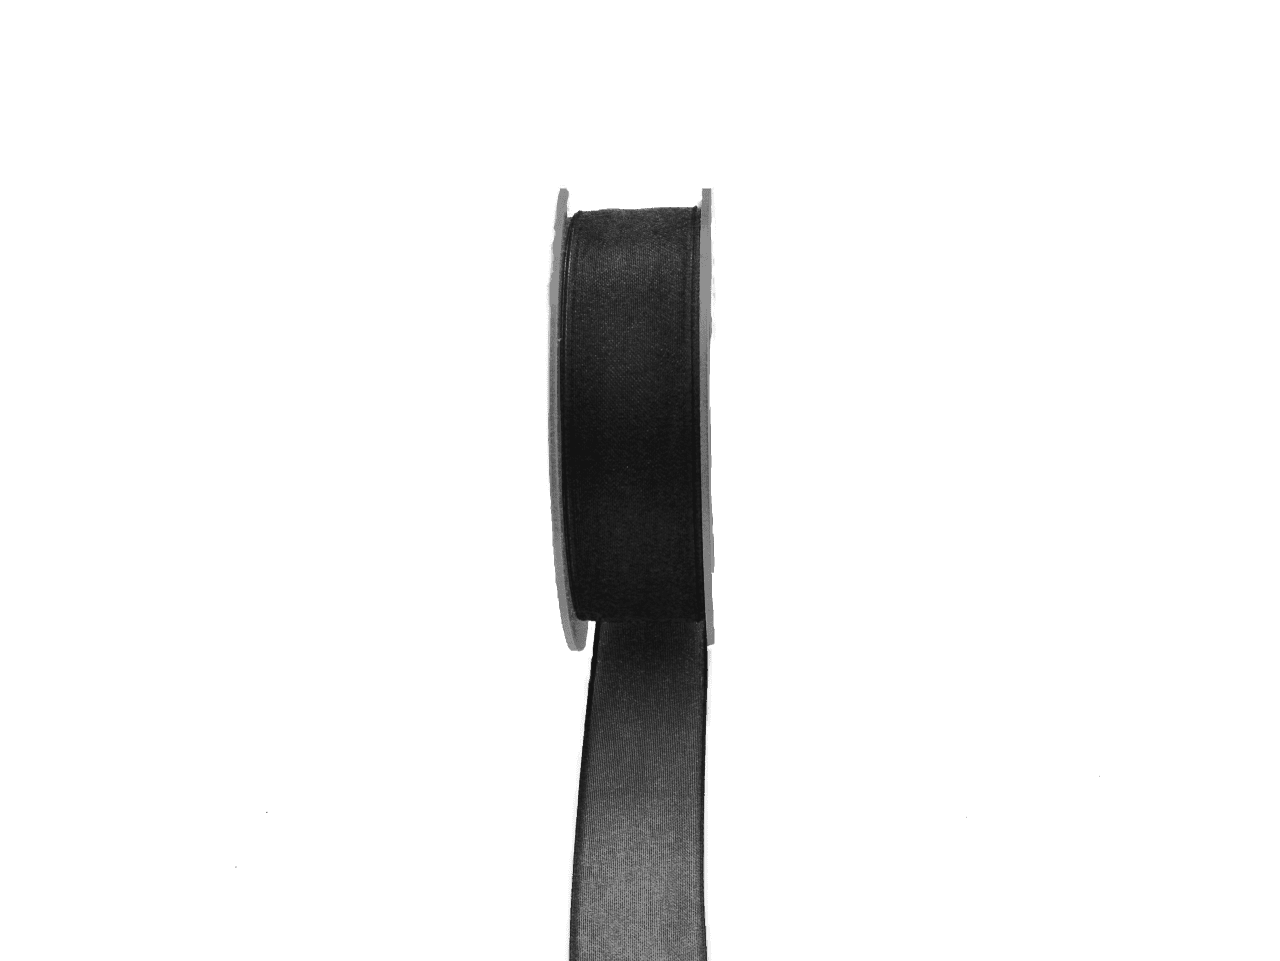 Dekoband ORGANDY, schwarz, Breite 10 mm, 50m